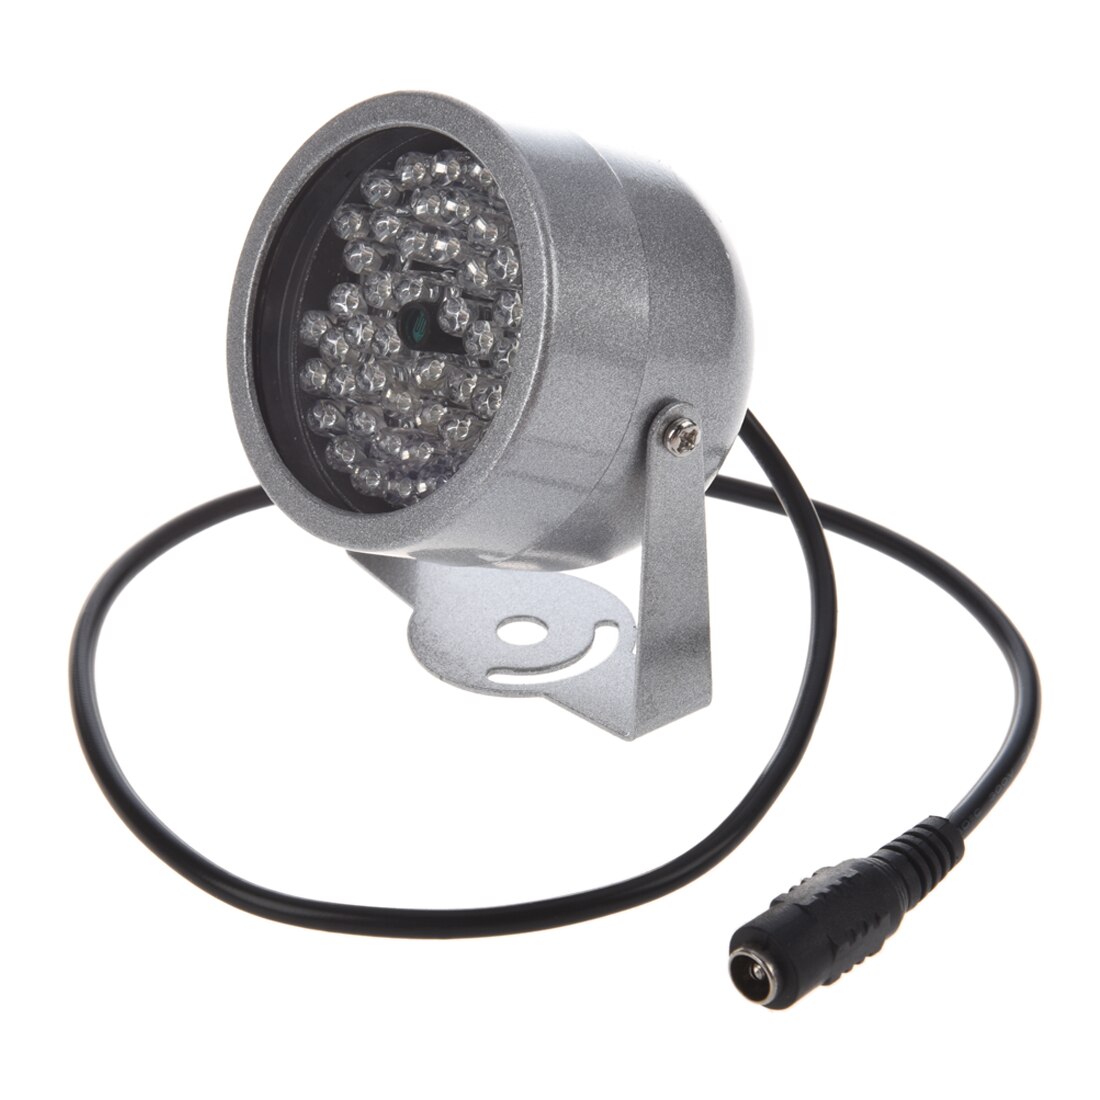 2 stuks van MOOL 48 Led-verlichting IR Infrarood Nachtzicht Licht Security Lamp Voor CCTV Camera